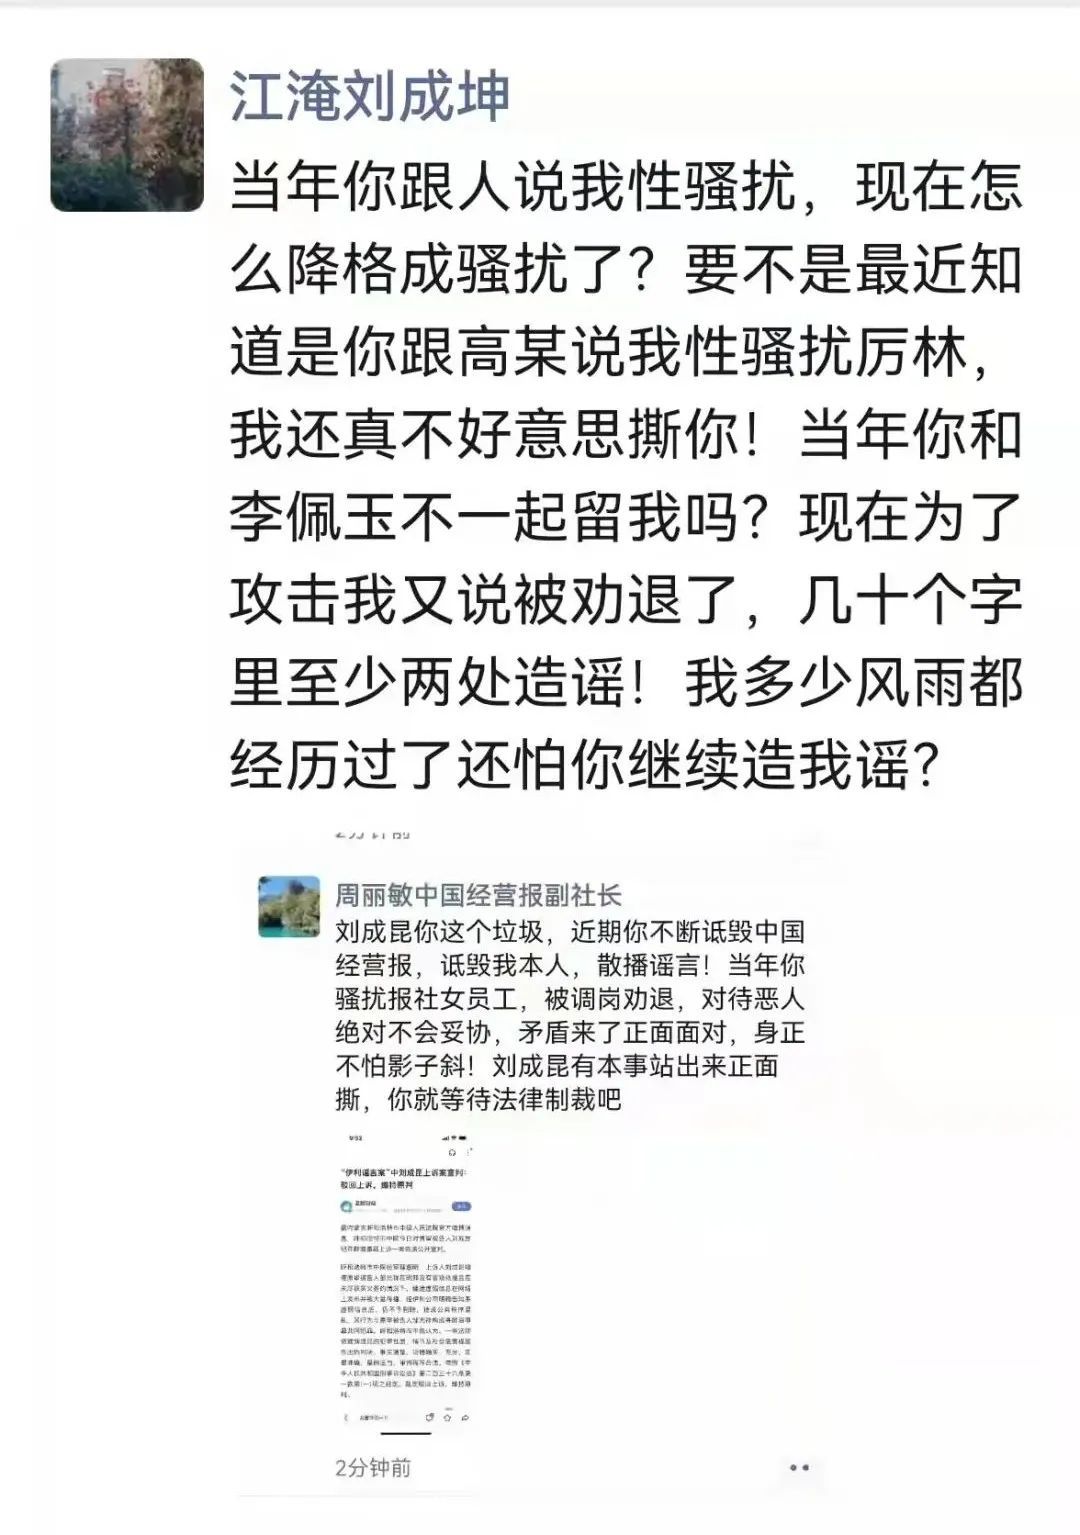 《中国经营报》多位高层遭举报 传总编辑已被控